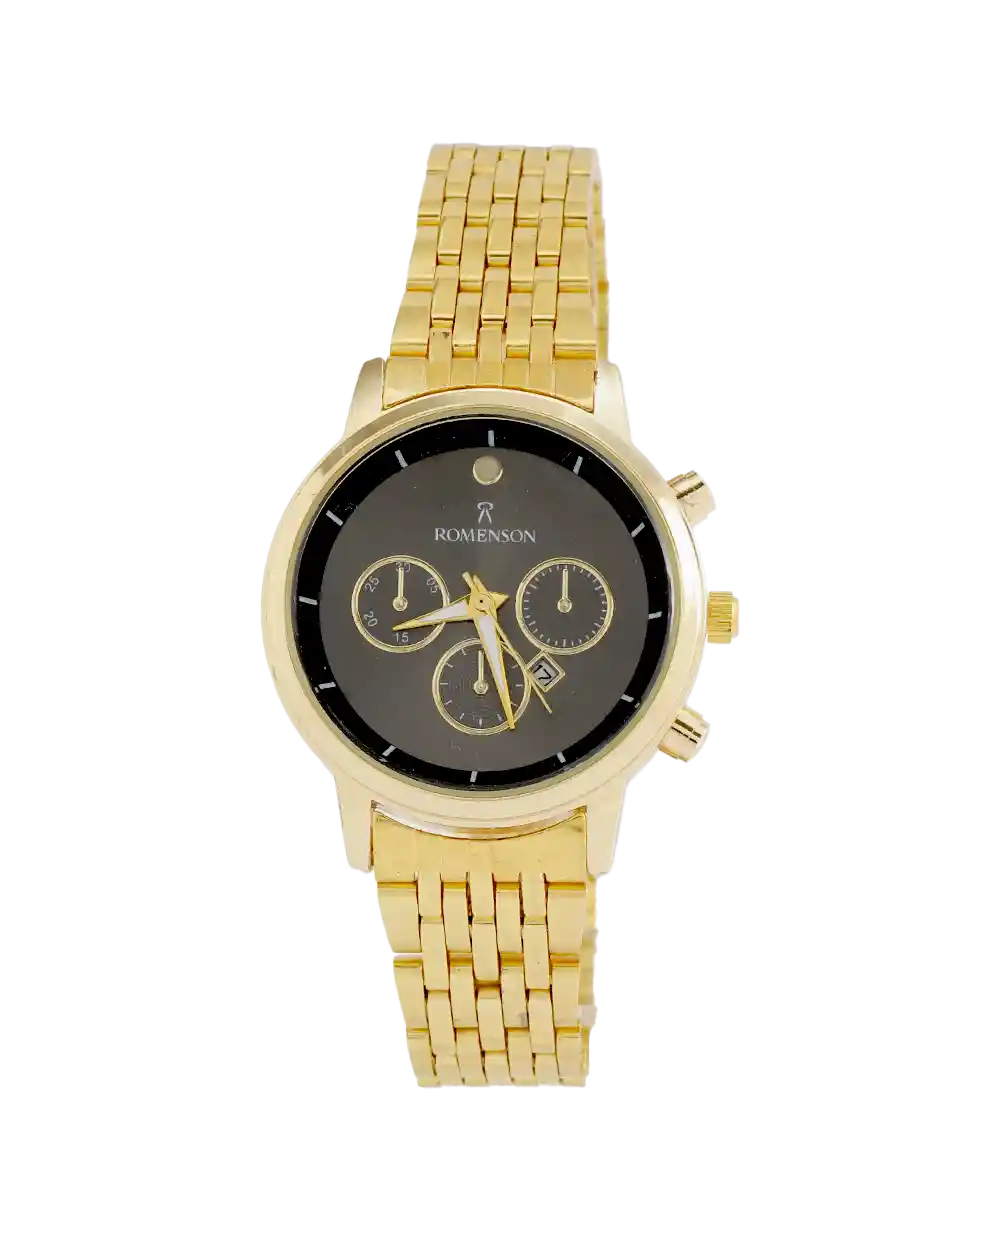 خرید ساعت مچی زنانه رومانسون ROMANSON مدل 1972 بند استیل رنگ ثابت طلایی با صفحه مشکی بهترین قیمت به همراه ارسال رایگان و جعبه